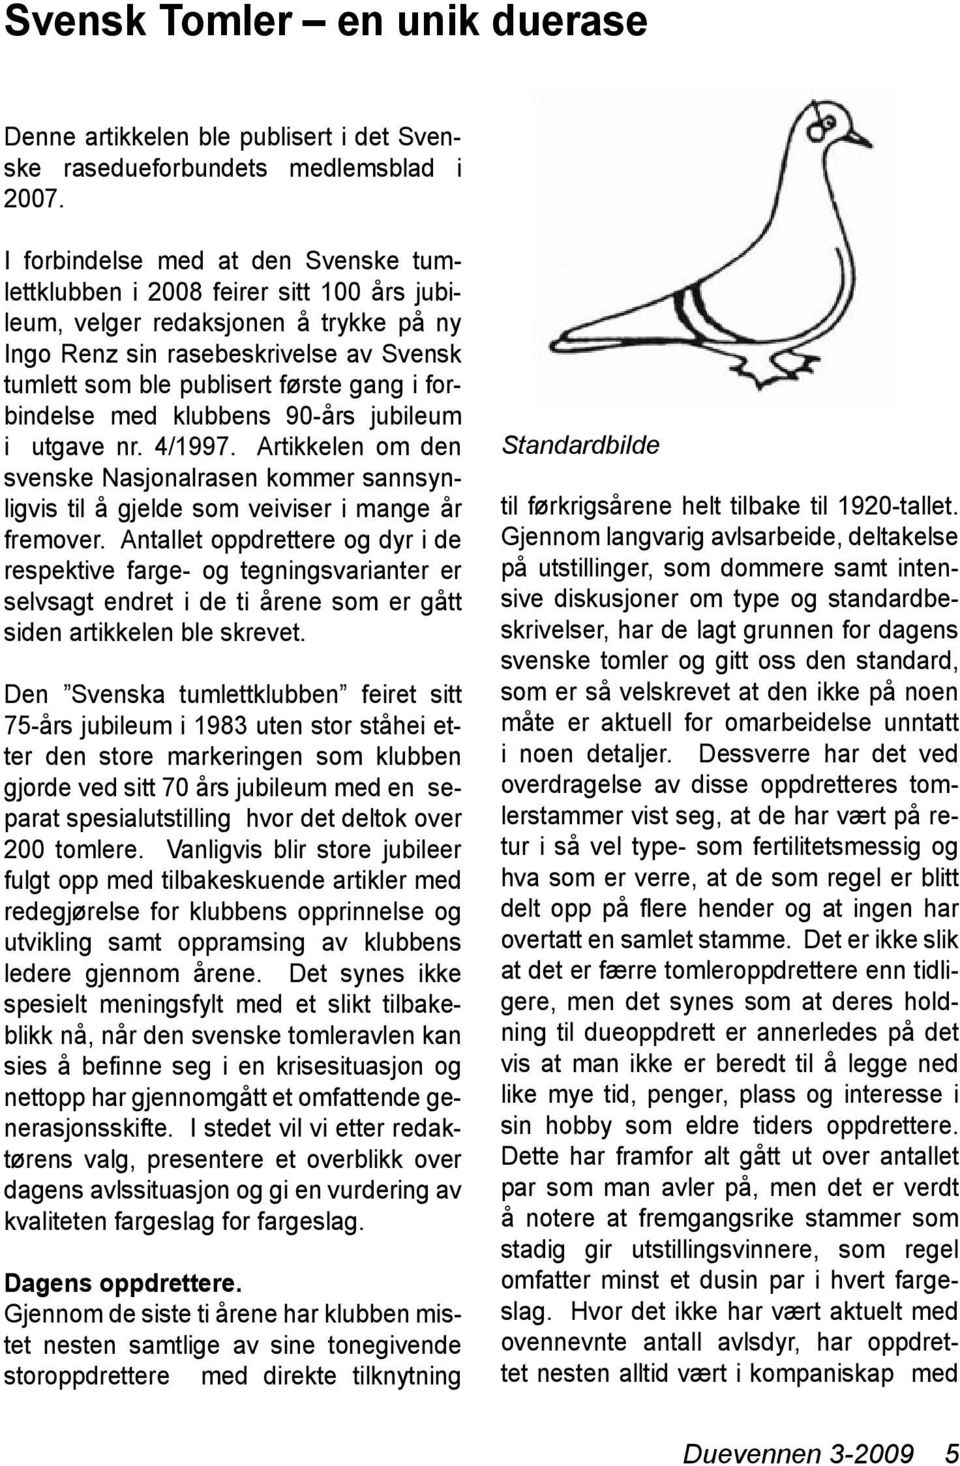 forbindelse med klubbens 90-års jubileum i utgave nr. 4/1997. Artikkelen om den svenske Nasjonalrasen kommer sannsynligvis til å gjelde som veiviser i mange år fremover.